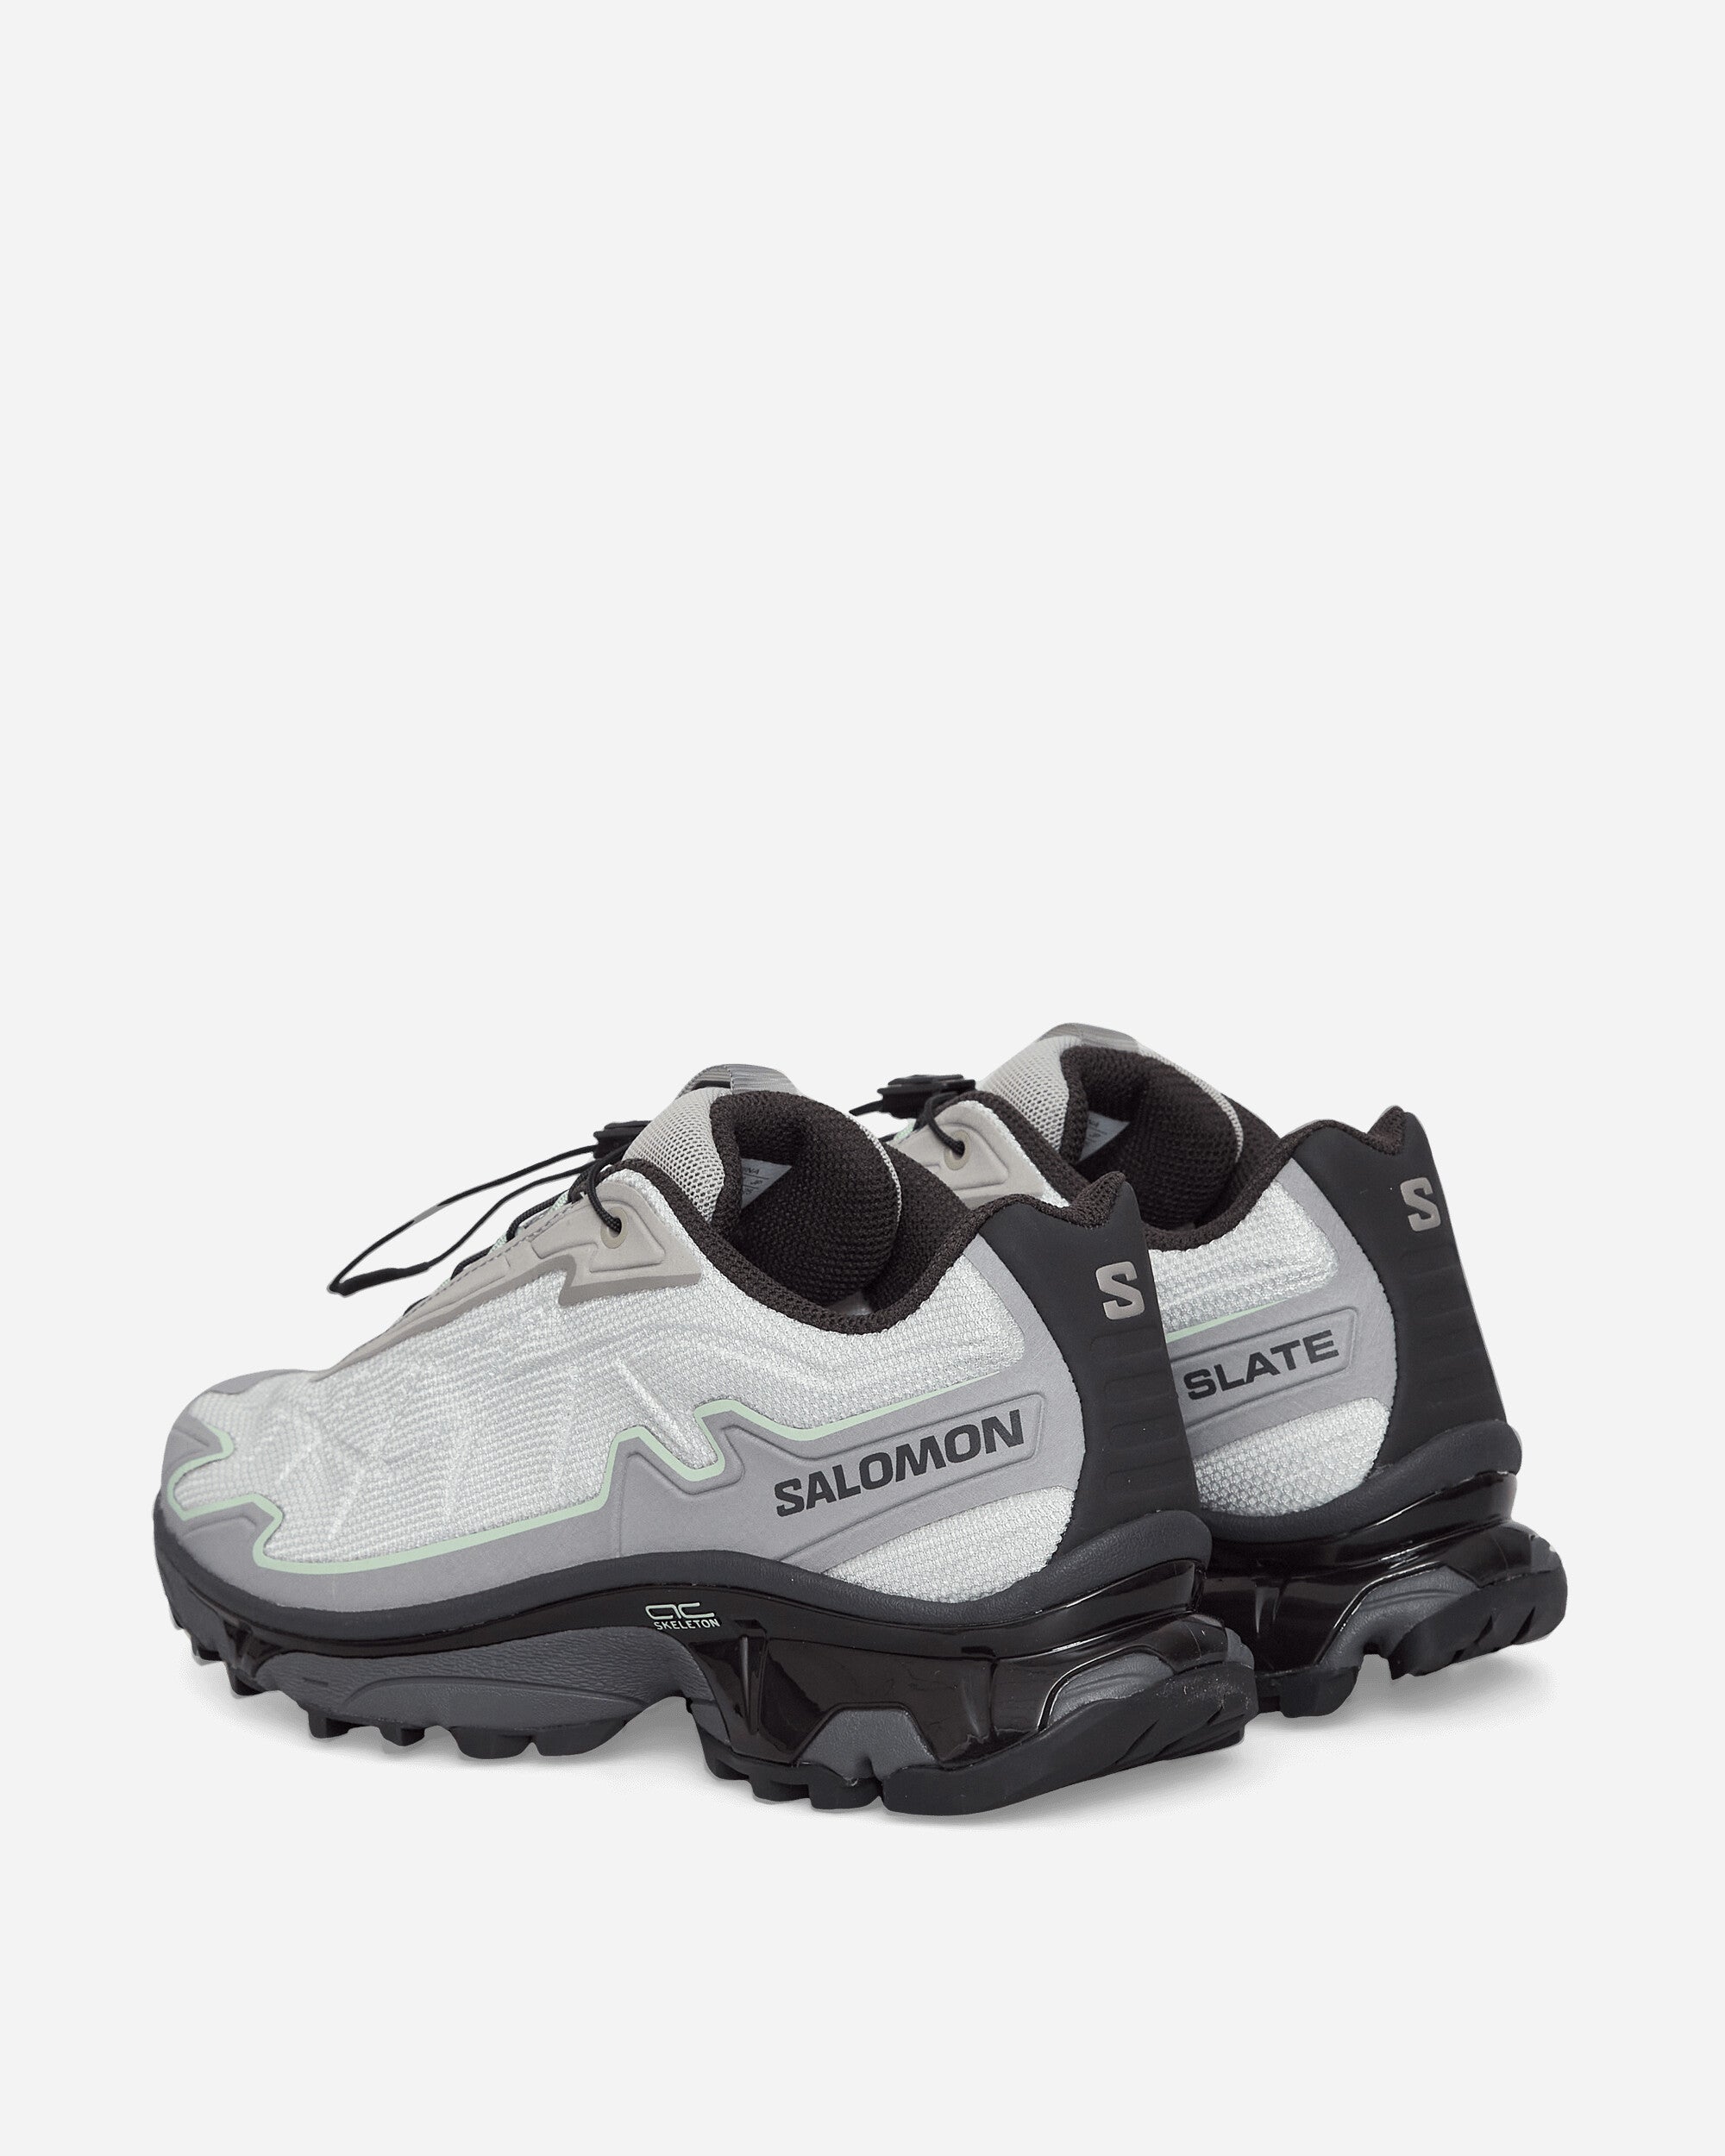 Salomon Xt-Slate Advanced Metal/Gray Flannel/Green Sneakers Low L47305500